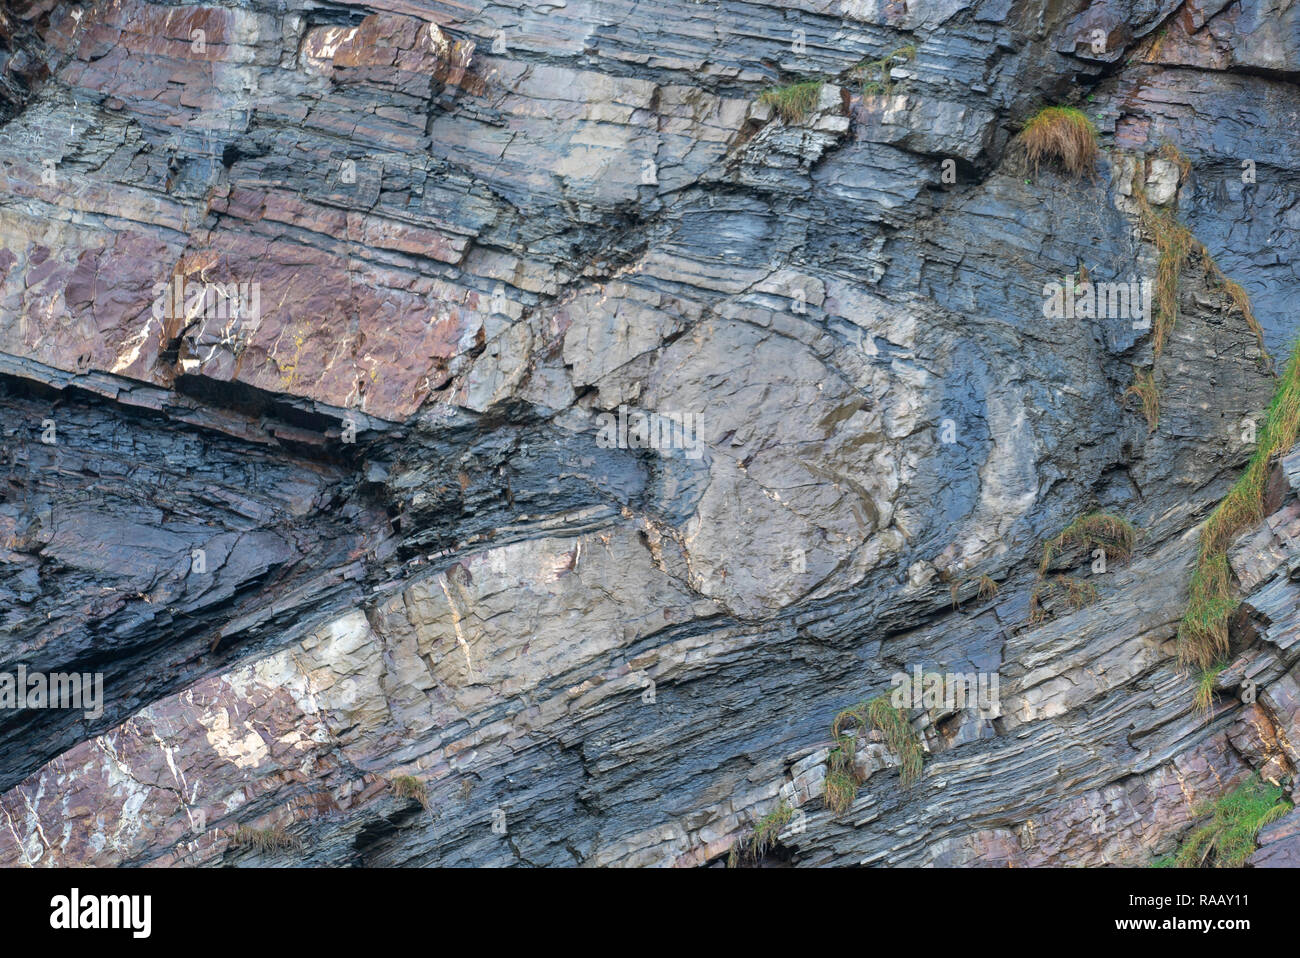 Spektakulär gefaltete Sequenz von abwechselnd grauen Schiefern und Sandsteinen Detail [5 von 5], North Cornwall UK Stockfoto